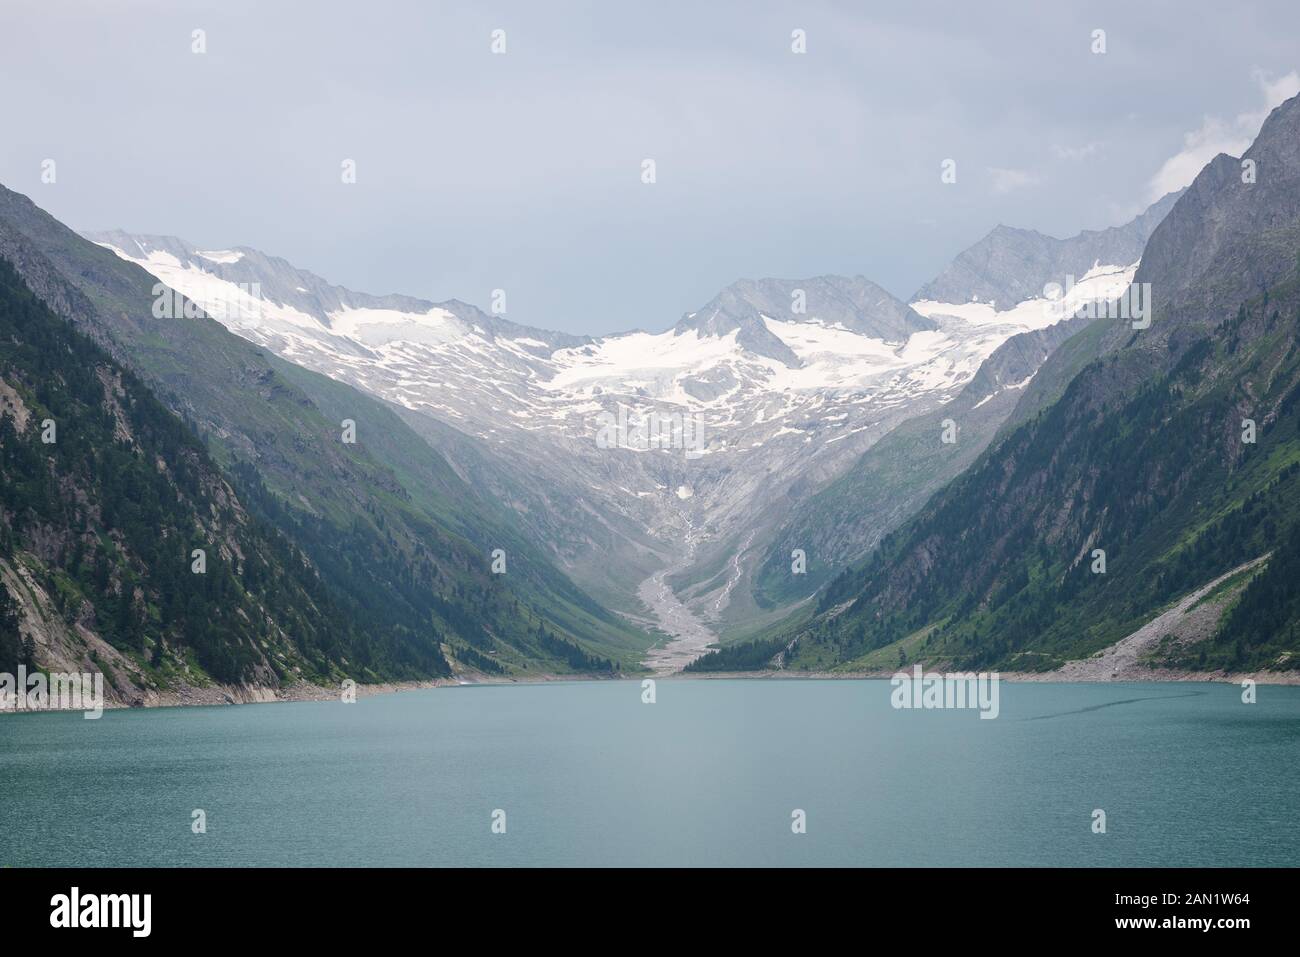 Vue sur le glacier et le lac dans les Alpes, près de la frontière de l'Autriche et de l'Italie Banque D'Images